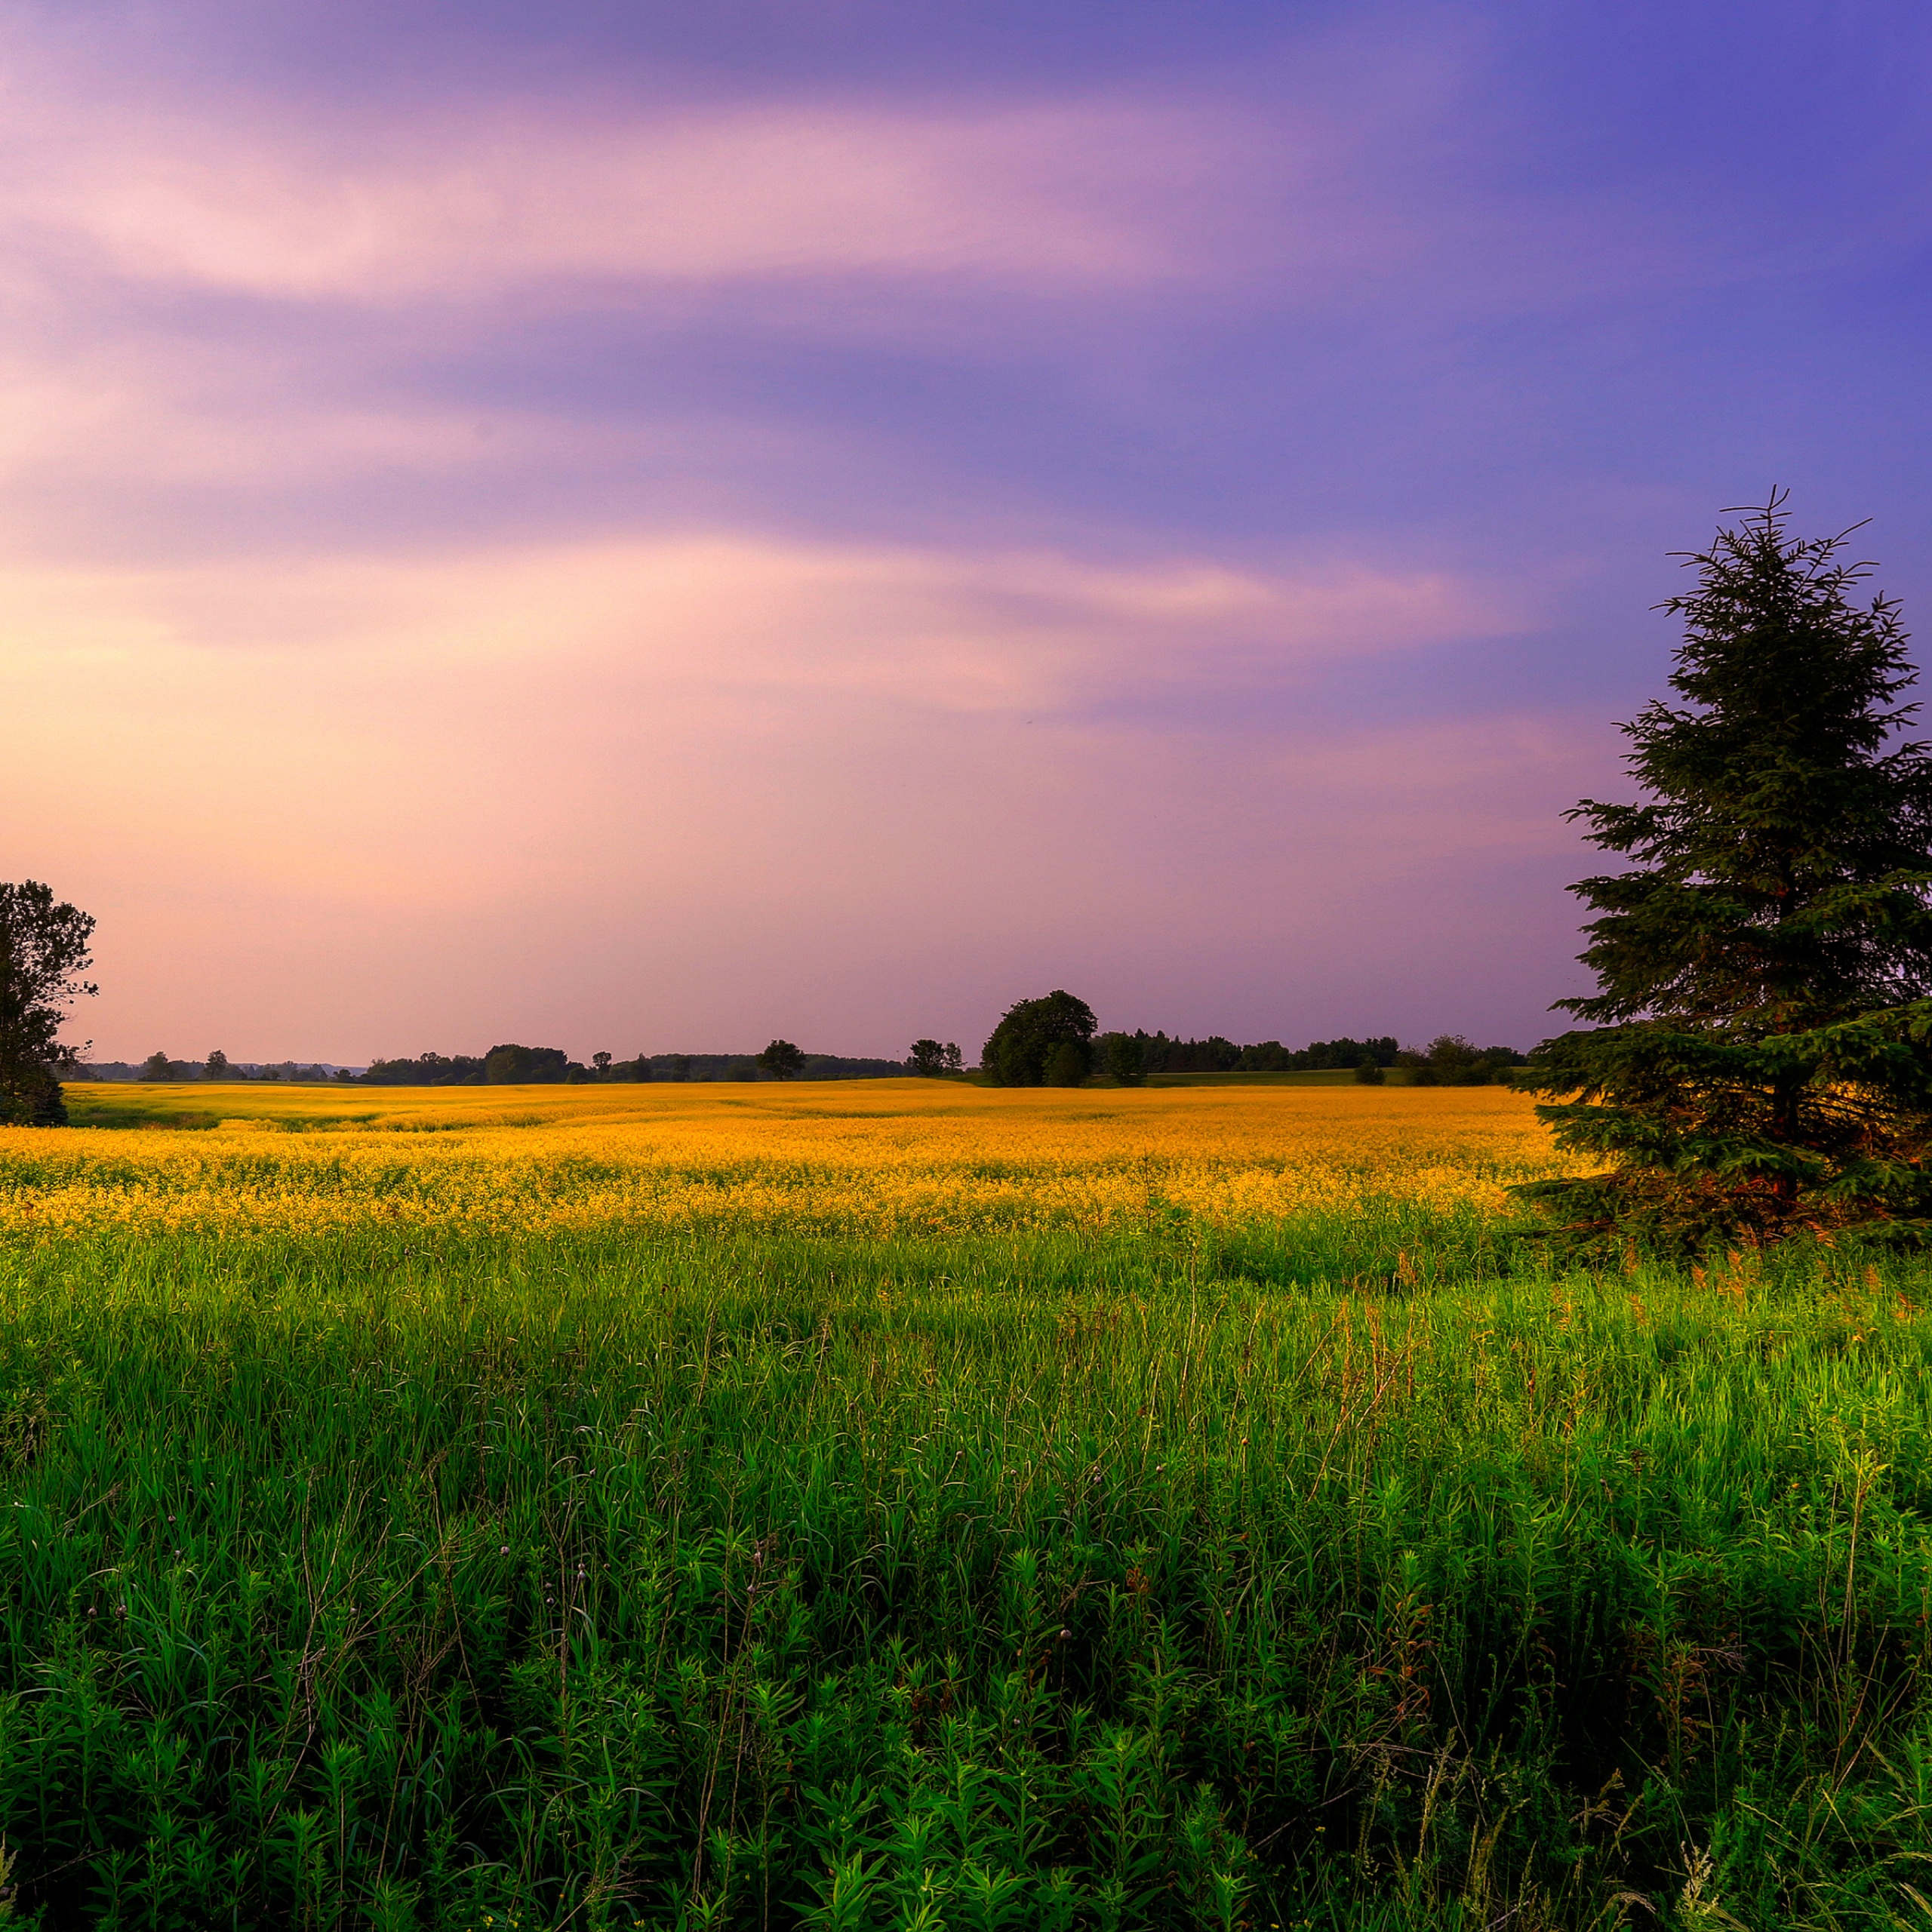 Khám phá địa hình đầy màu sắc và sức sống của cánh đồng trang trại. Những hình ảnh về đồng hoa thảo, cánh đồng lúa mạch và thảo nguyên xanh tươi sẽ khiến bạn thực sự cảm thấy yên bình sau một ngày bận rộn.